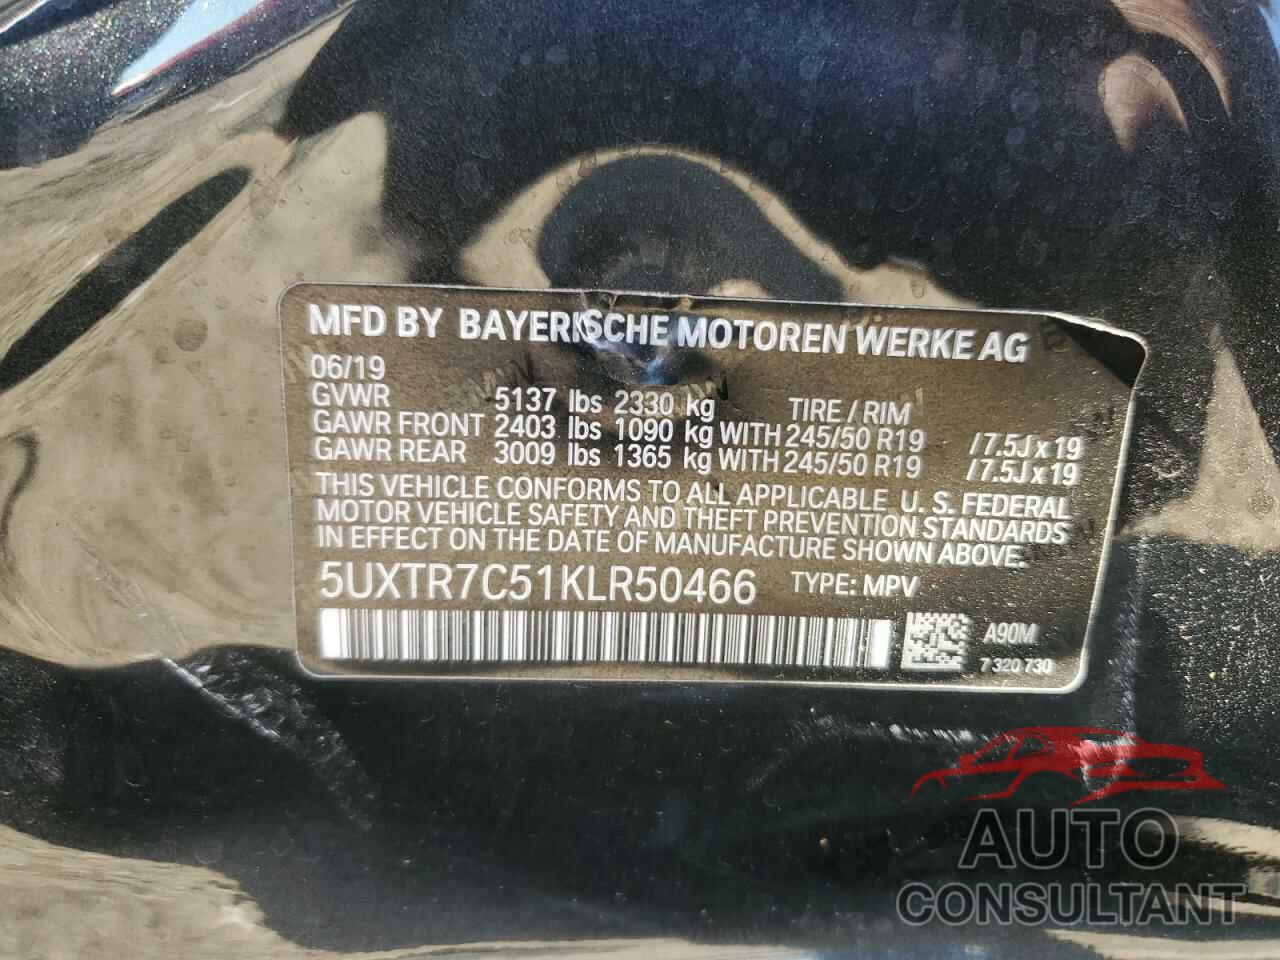 BMW X3 2019 - 5UXTR7C51KLR50466